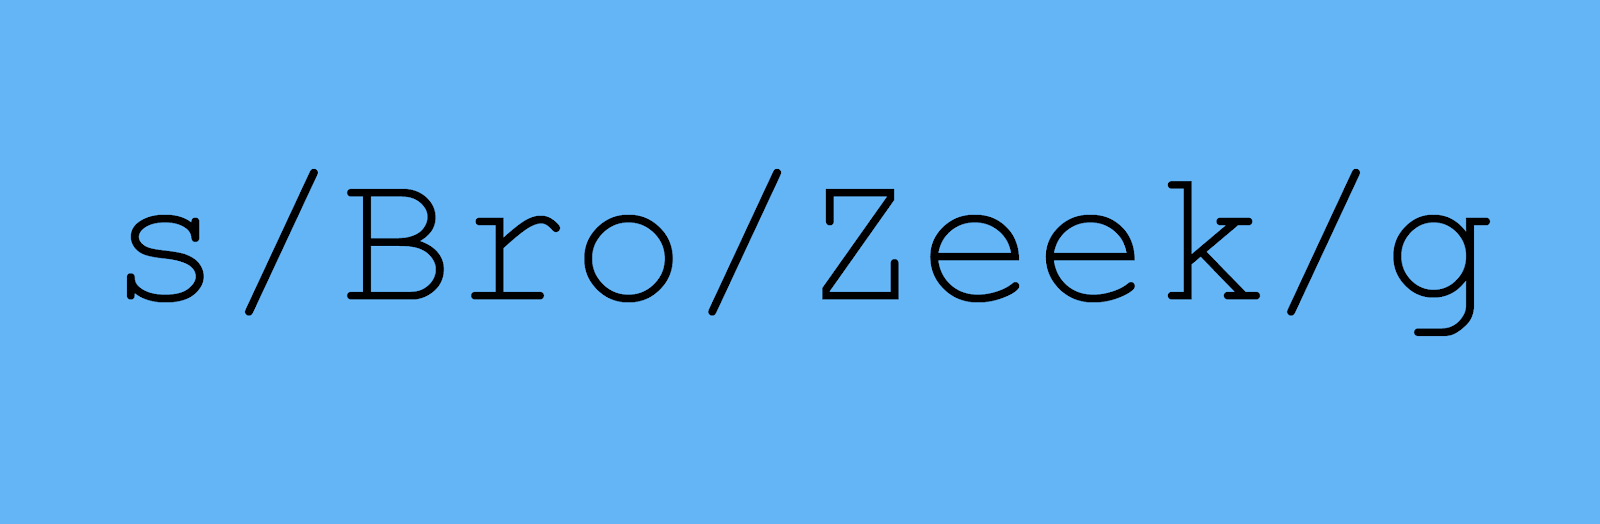 Analisador de tráfego Zeek 3.0.0 é lançado após 7 anos